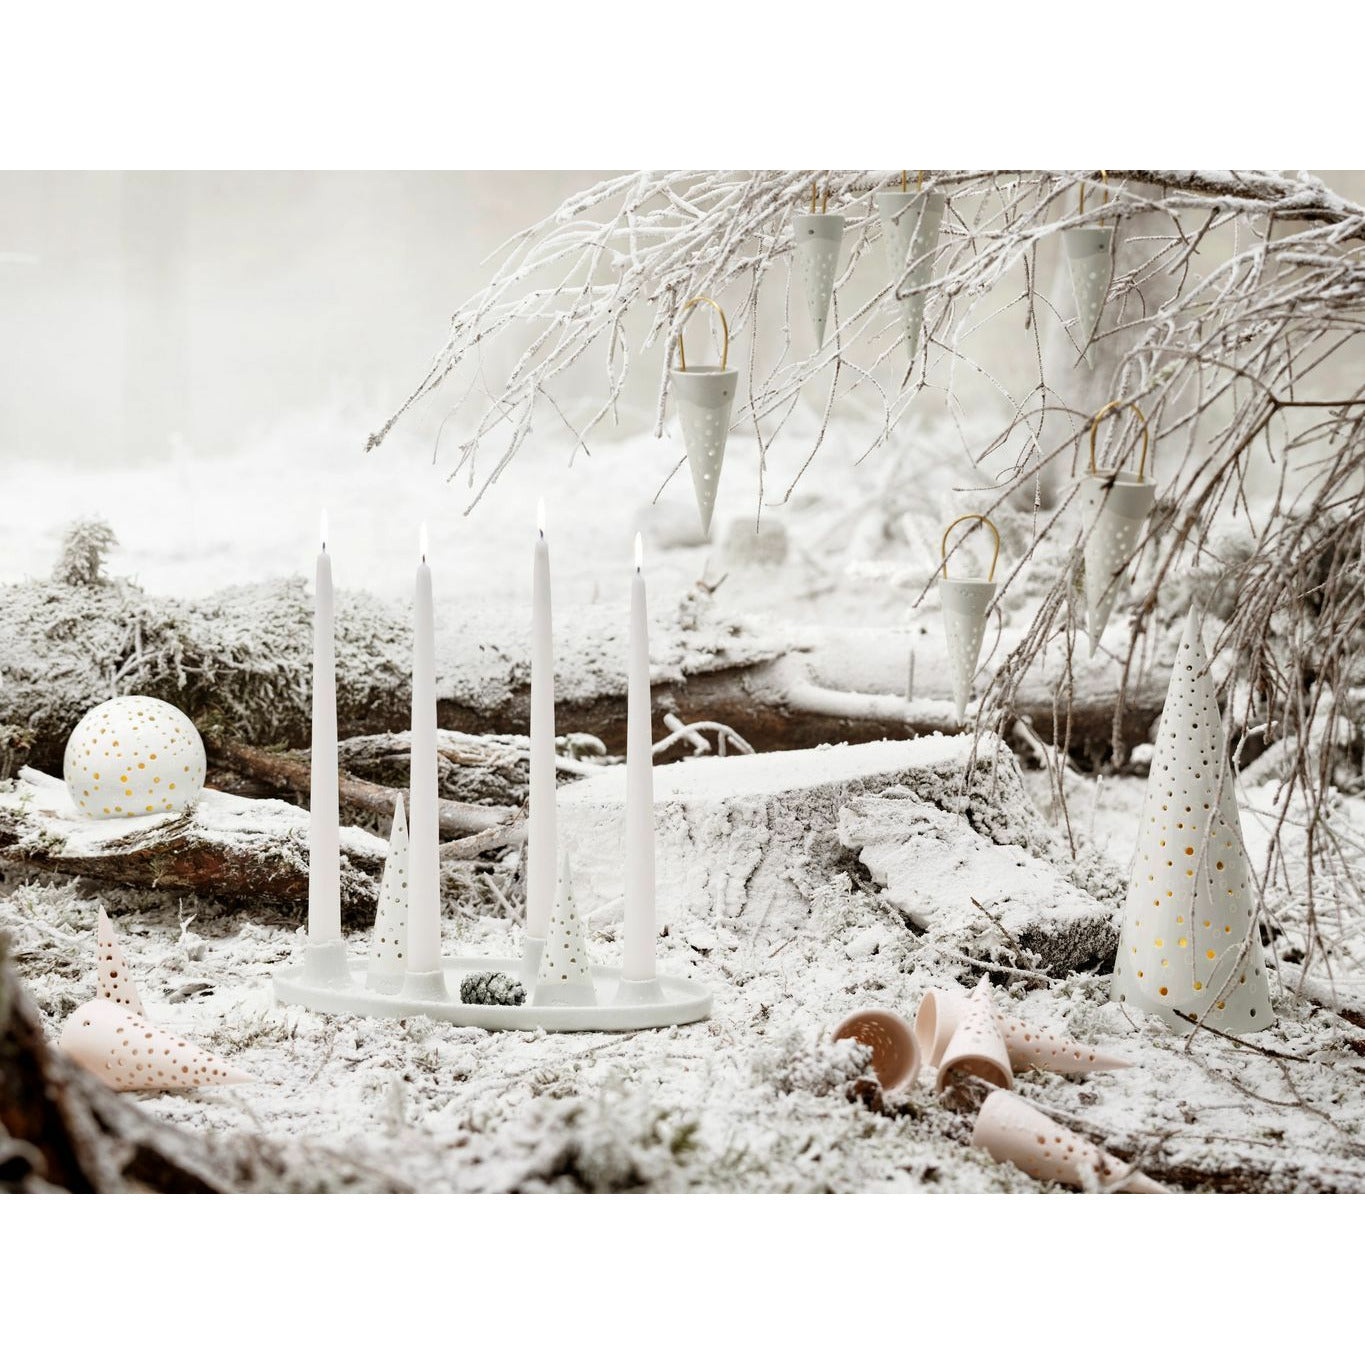 Kähler Nobili Christmas Timmer 5x18.5 Cm, Snow White